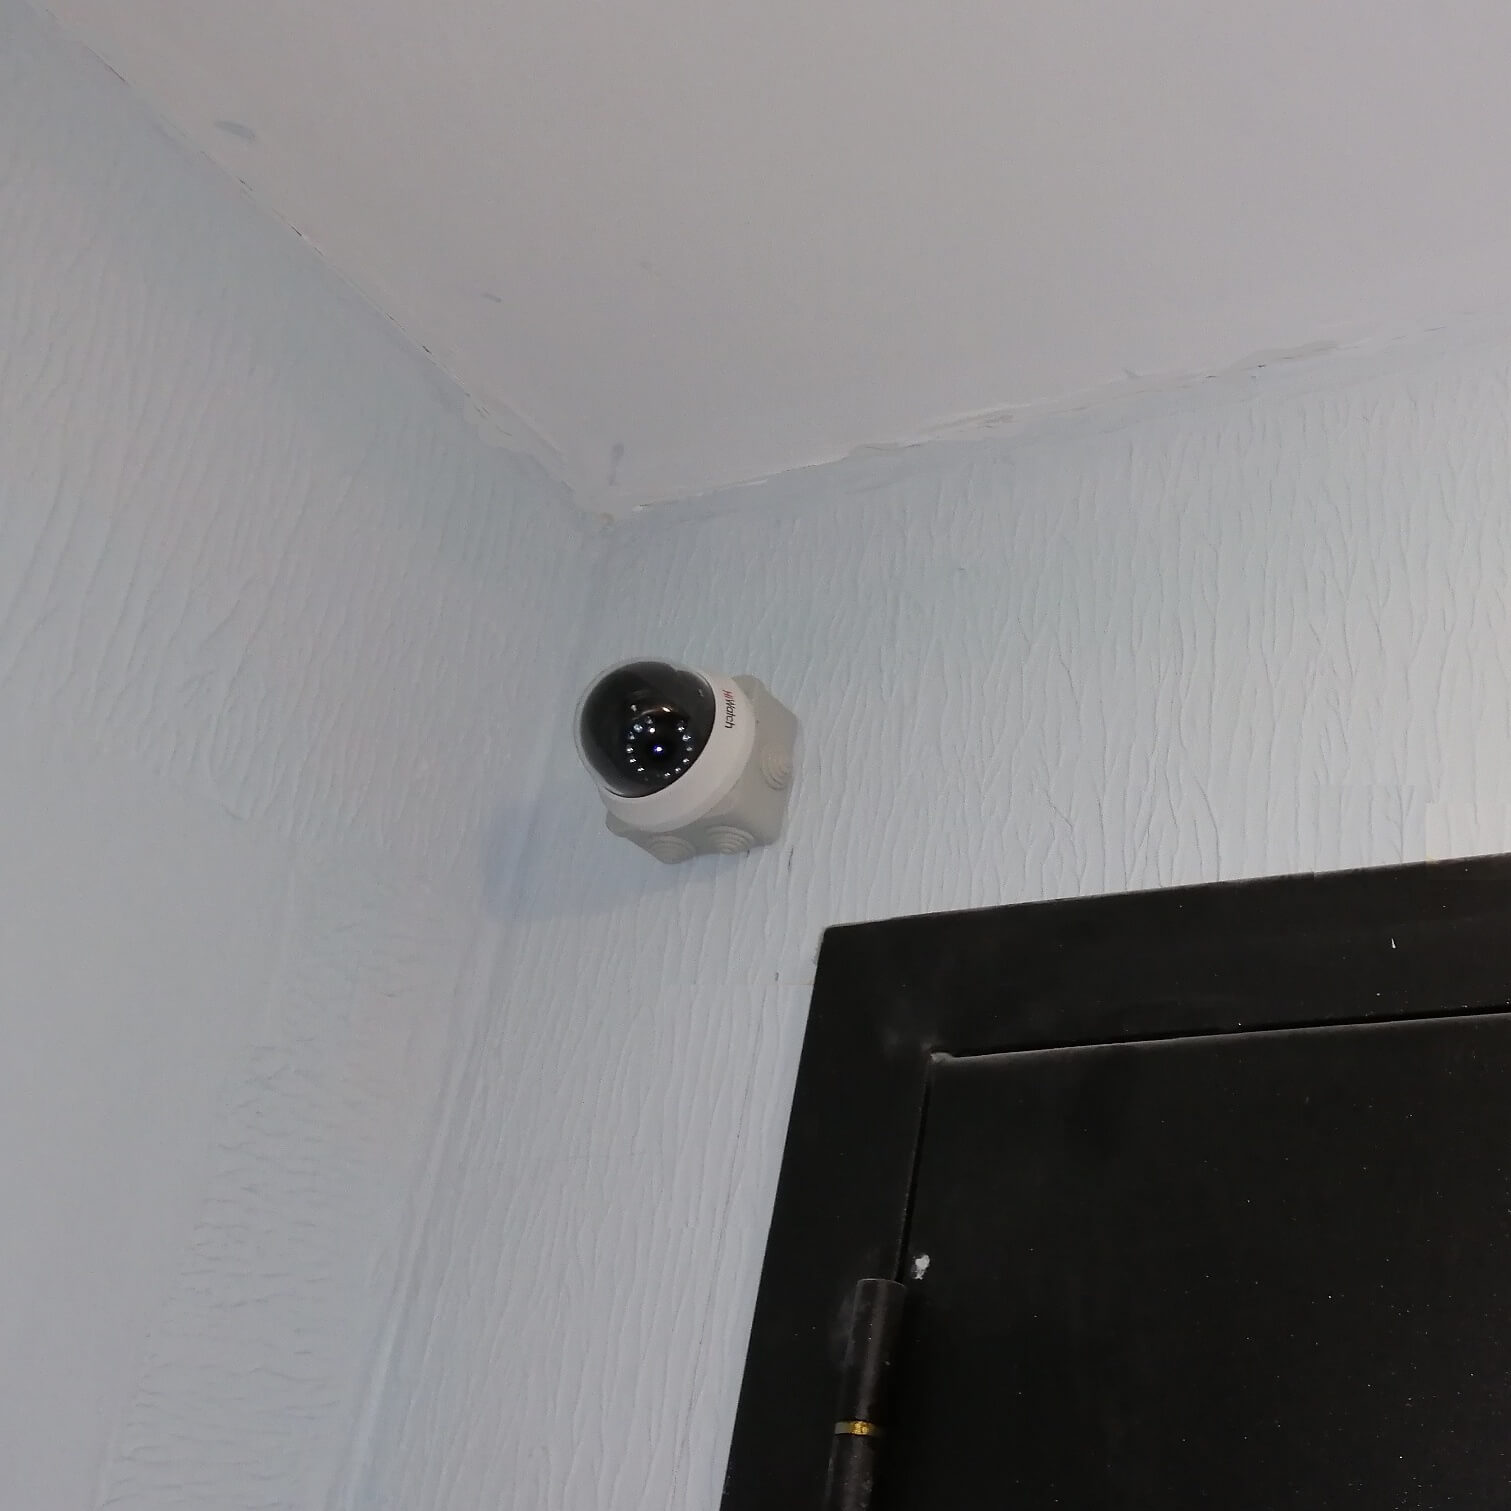 Пример установки видеонаблюдения в банк над дверью